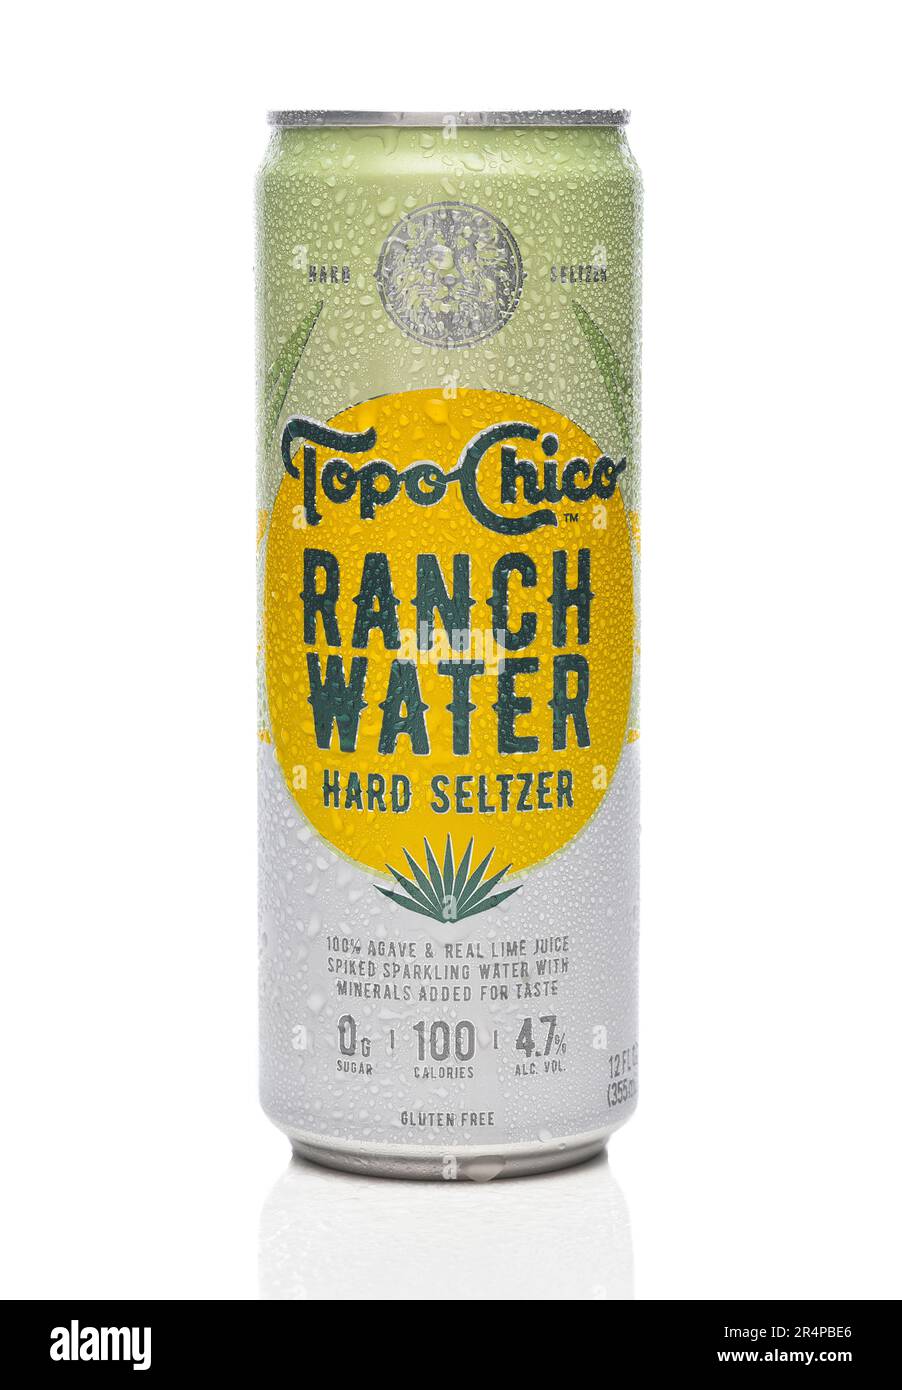 IRIVNE, KALIFORNIEN - 29. MAI 20223: Eine Dose Topo Chico Ranch Water Hard Seltzer. Stockfoto